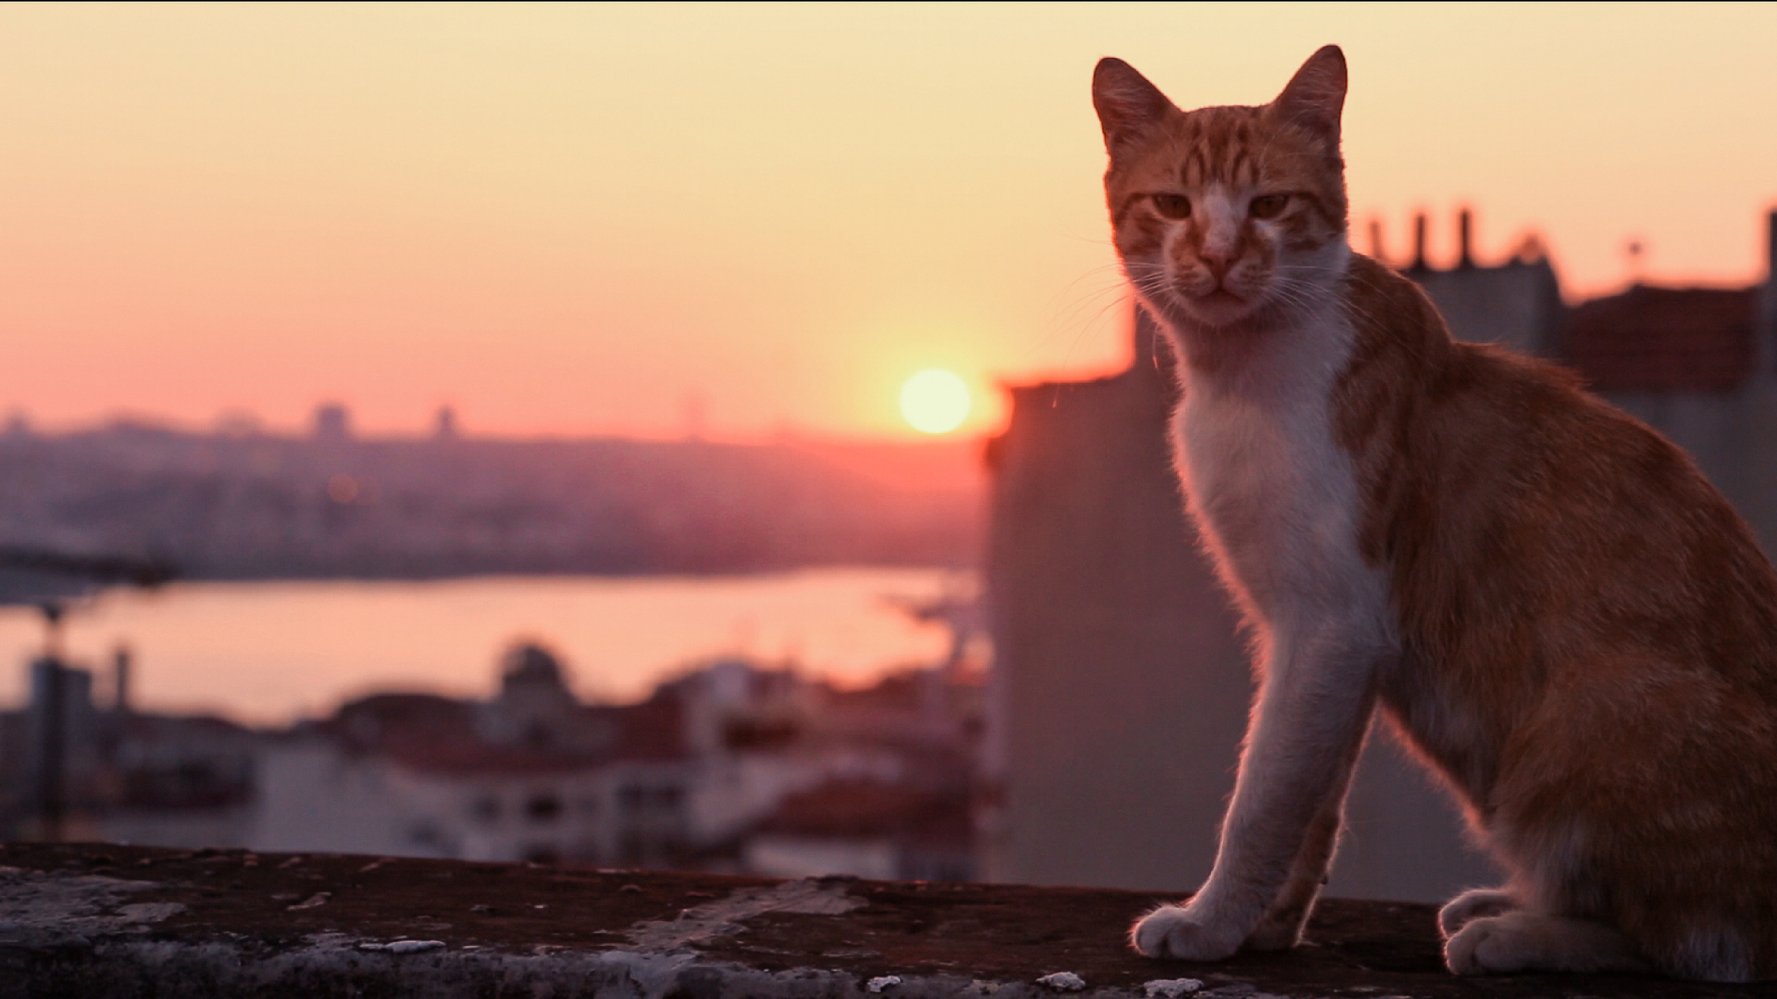 Wieczór Kinomaniaka: Kedi - sekretne życie kotów